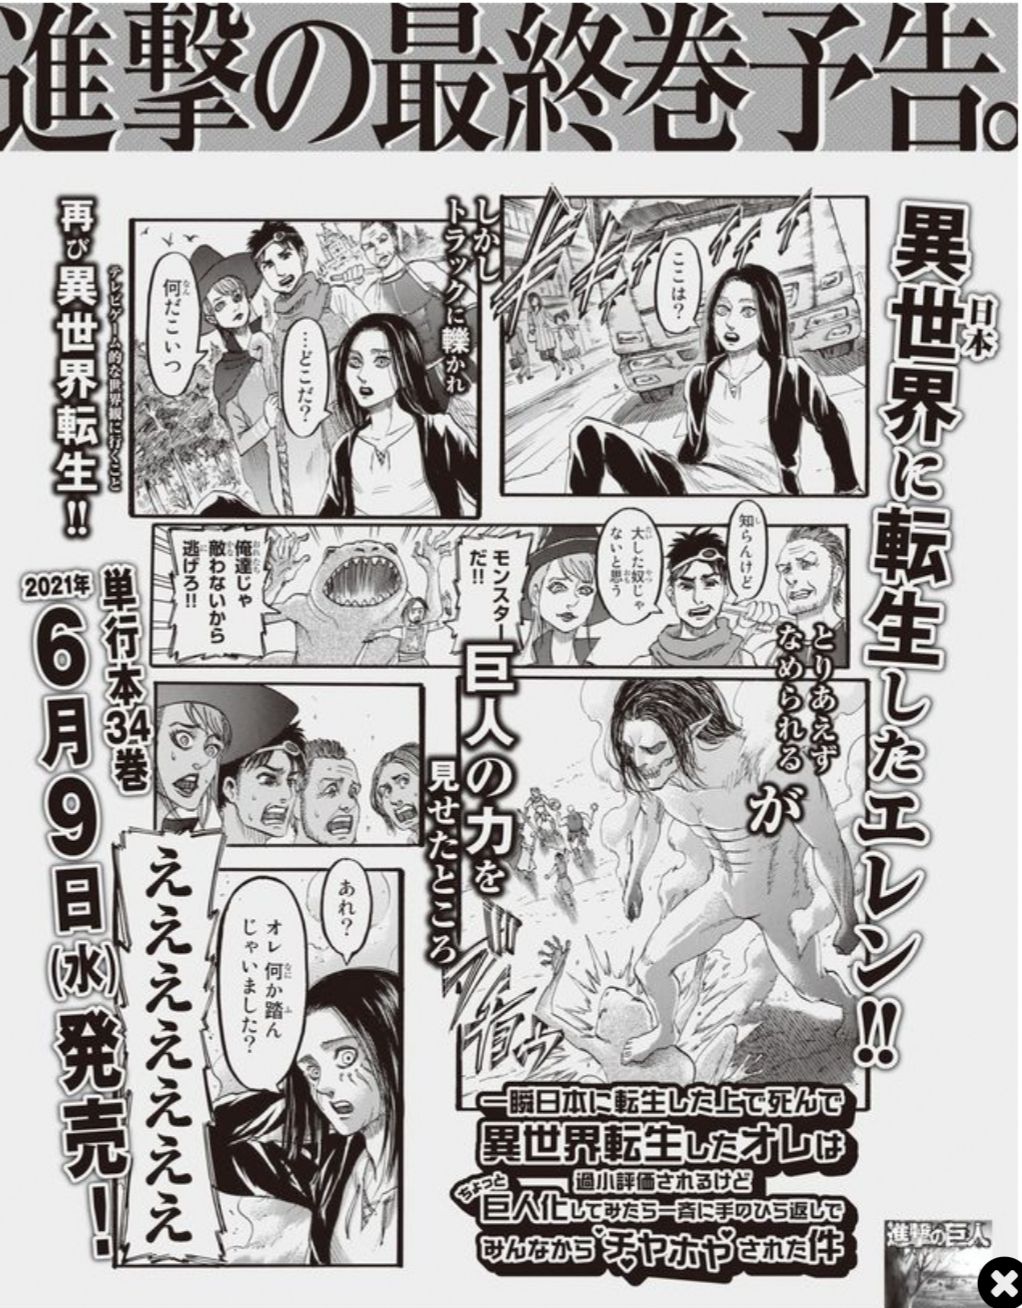 Eren ke dunia isekai dalam iklan peringatan perilisan volume kompilasi ke-34 di surat kabar Asahi Shimbun.